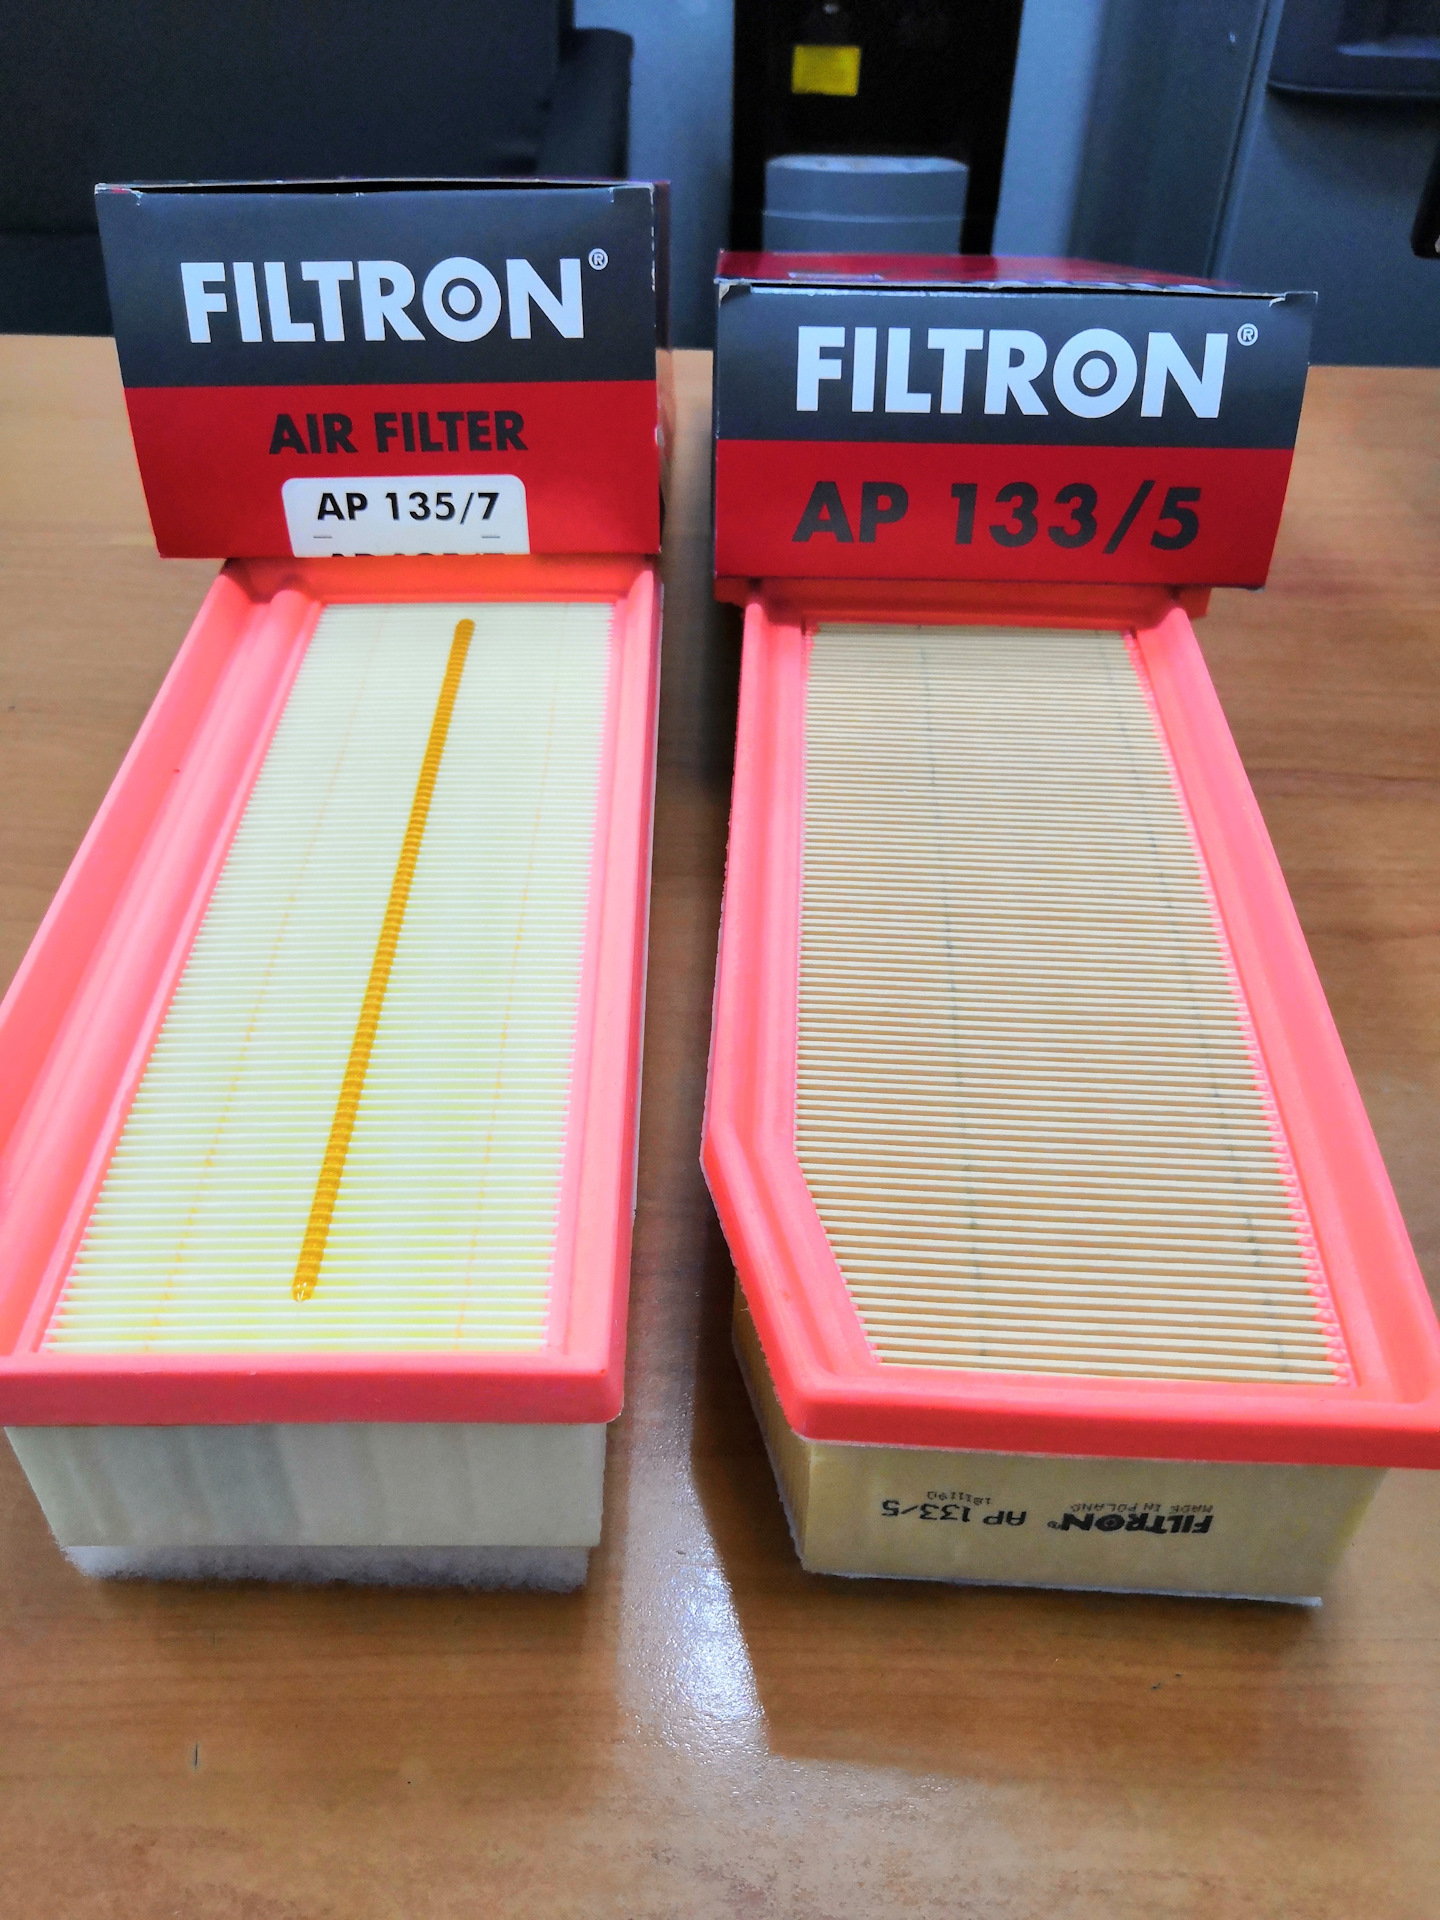 Ap фильтр воздушный. Фильтр воздушный Фильтрон 133/5. FILTRON AP 135/7 фильтр воздушный. FILTRON AP 135/7 фильтр воздушный двигателя.